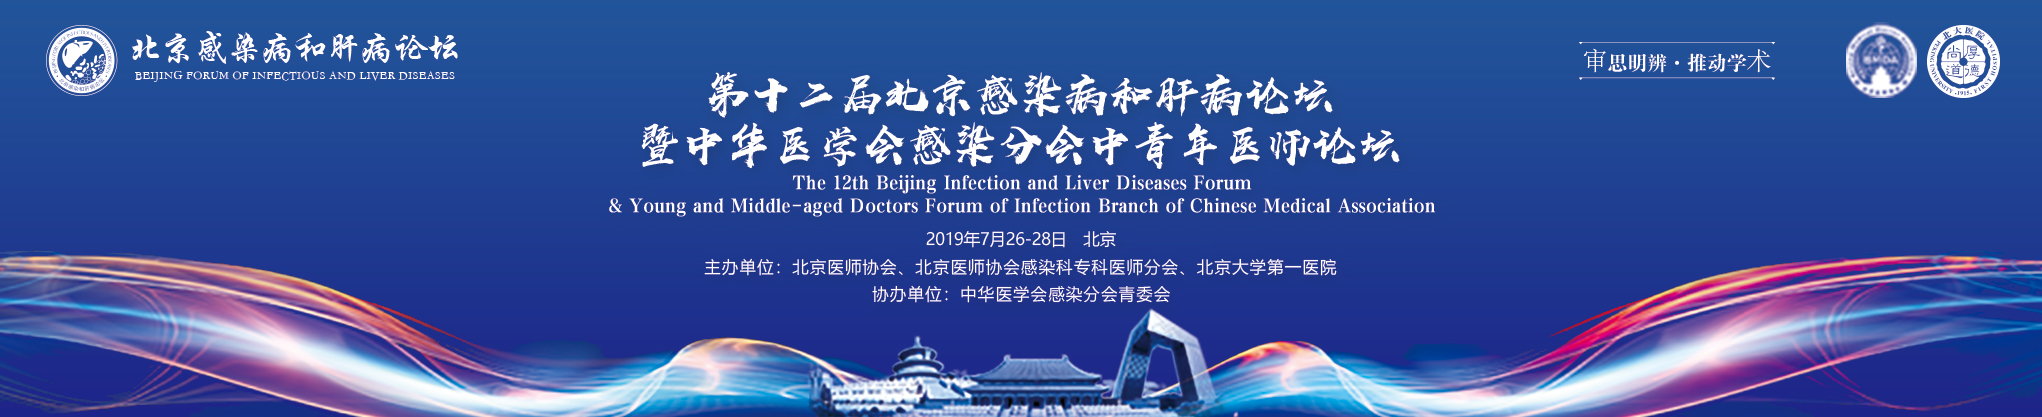 第十二届北京感染病和肝病论坛